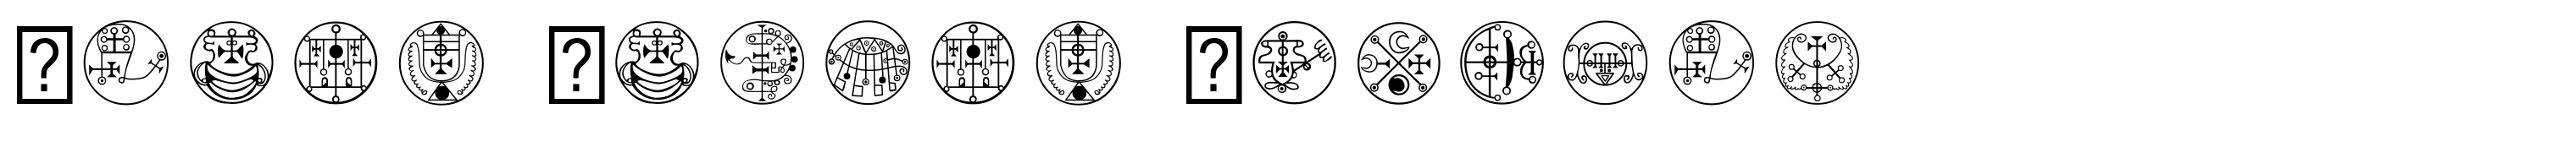 Black Magick Symbols